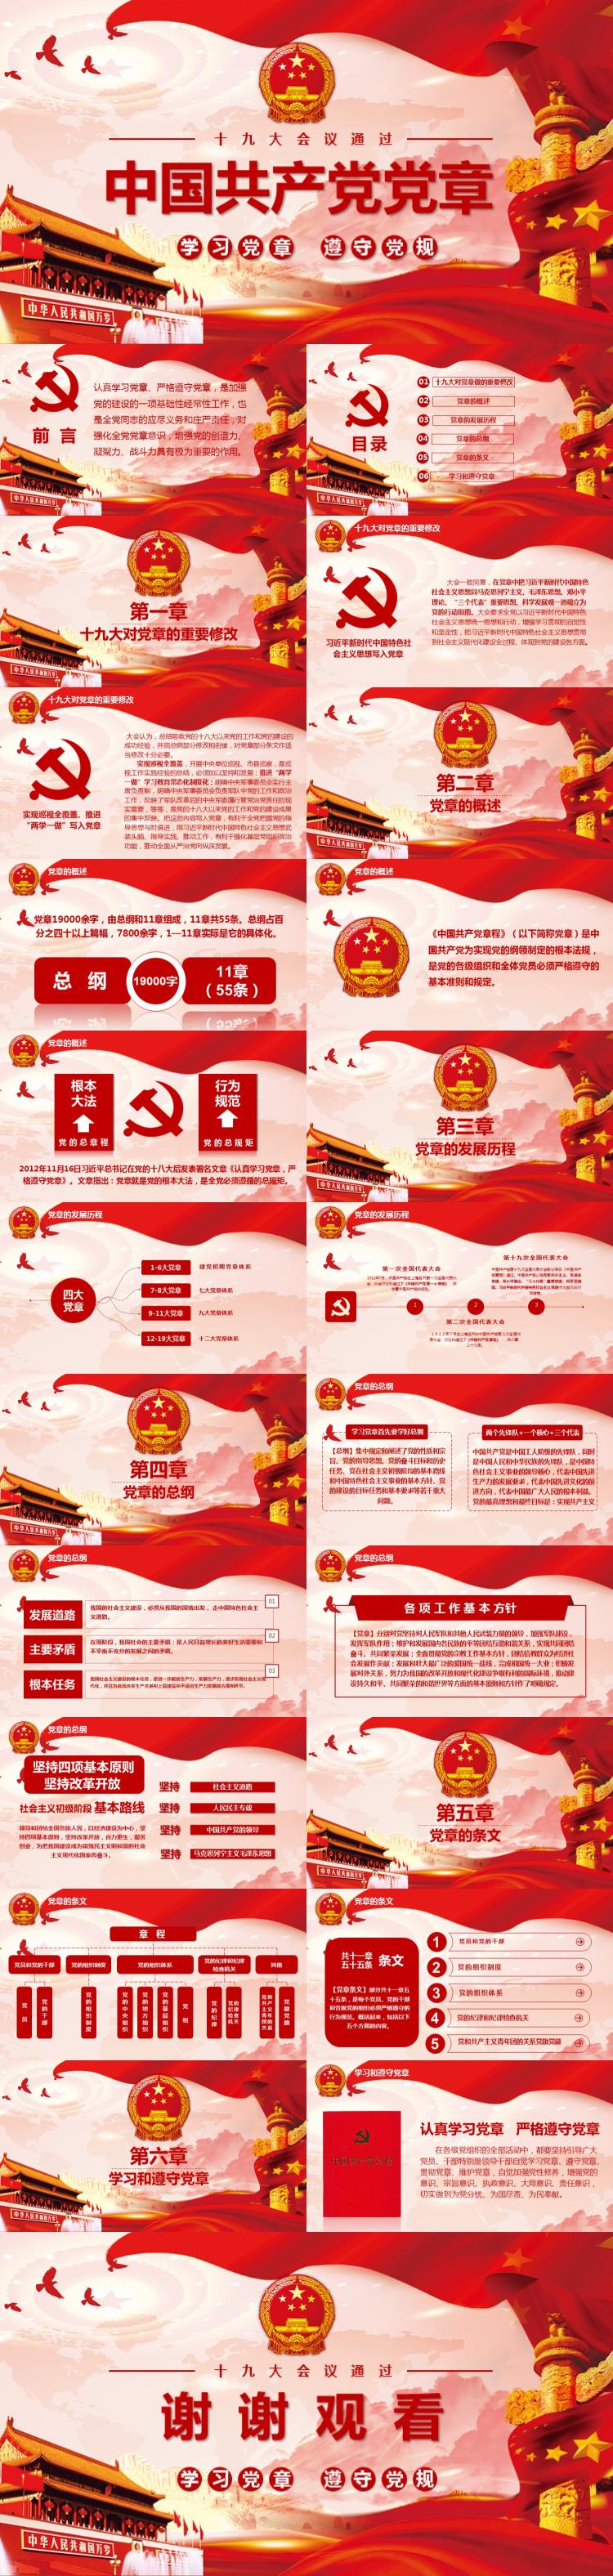 中国共产党党章PPT模板